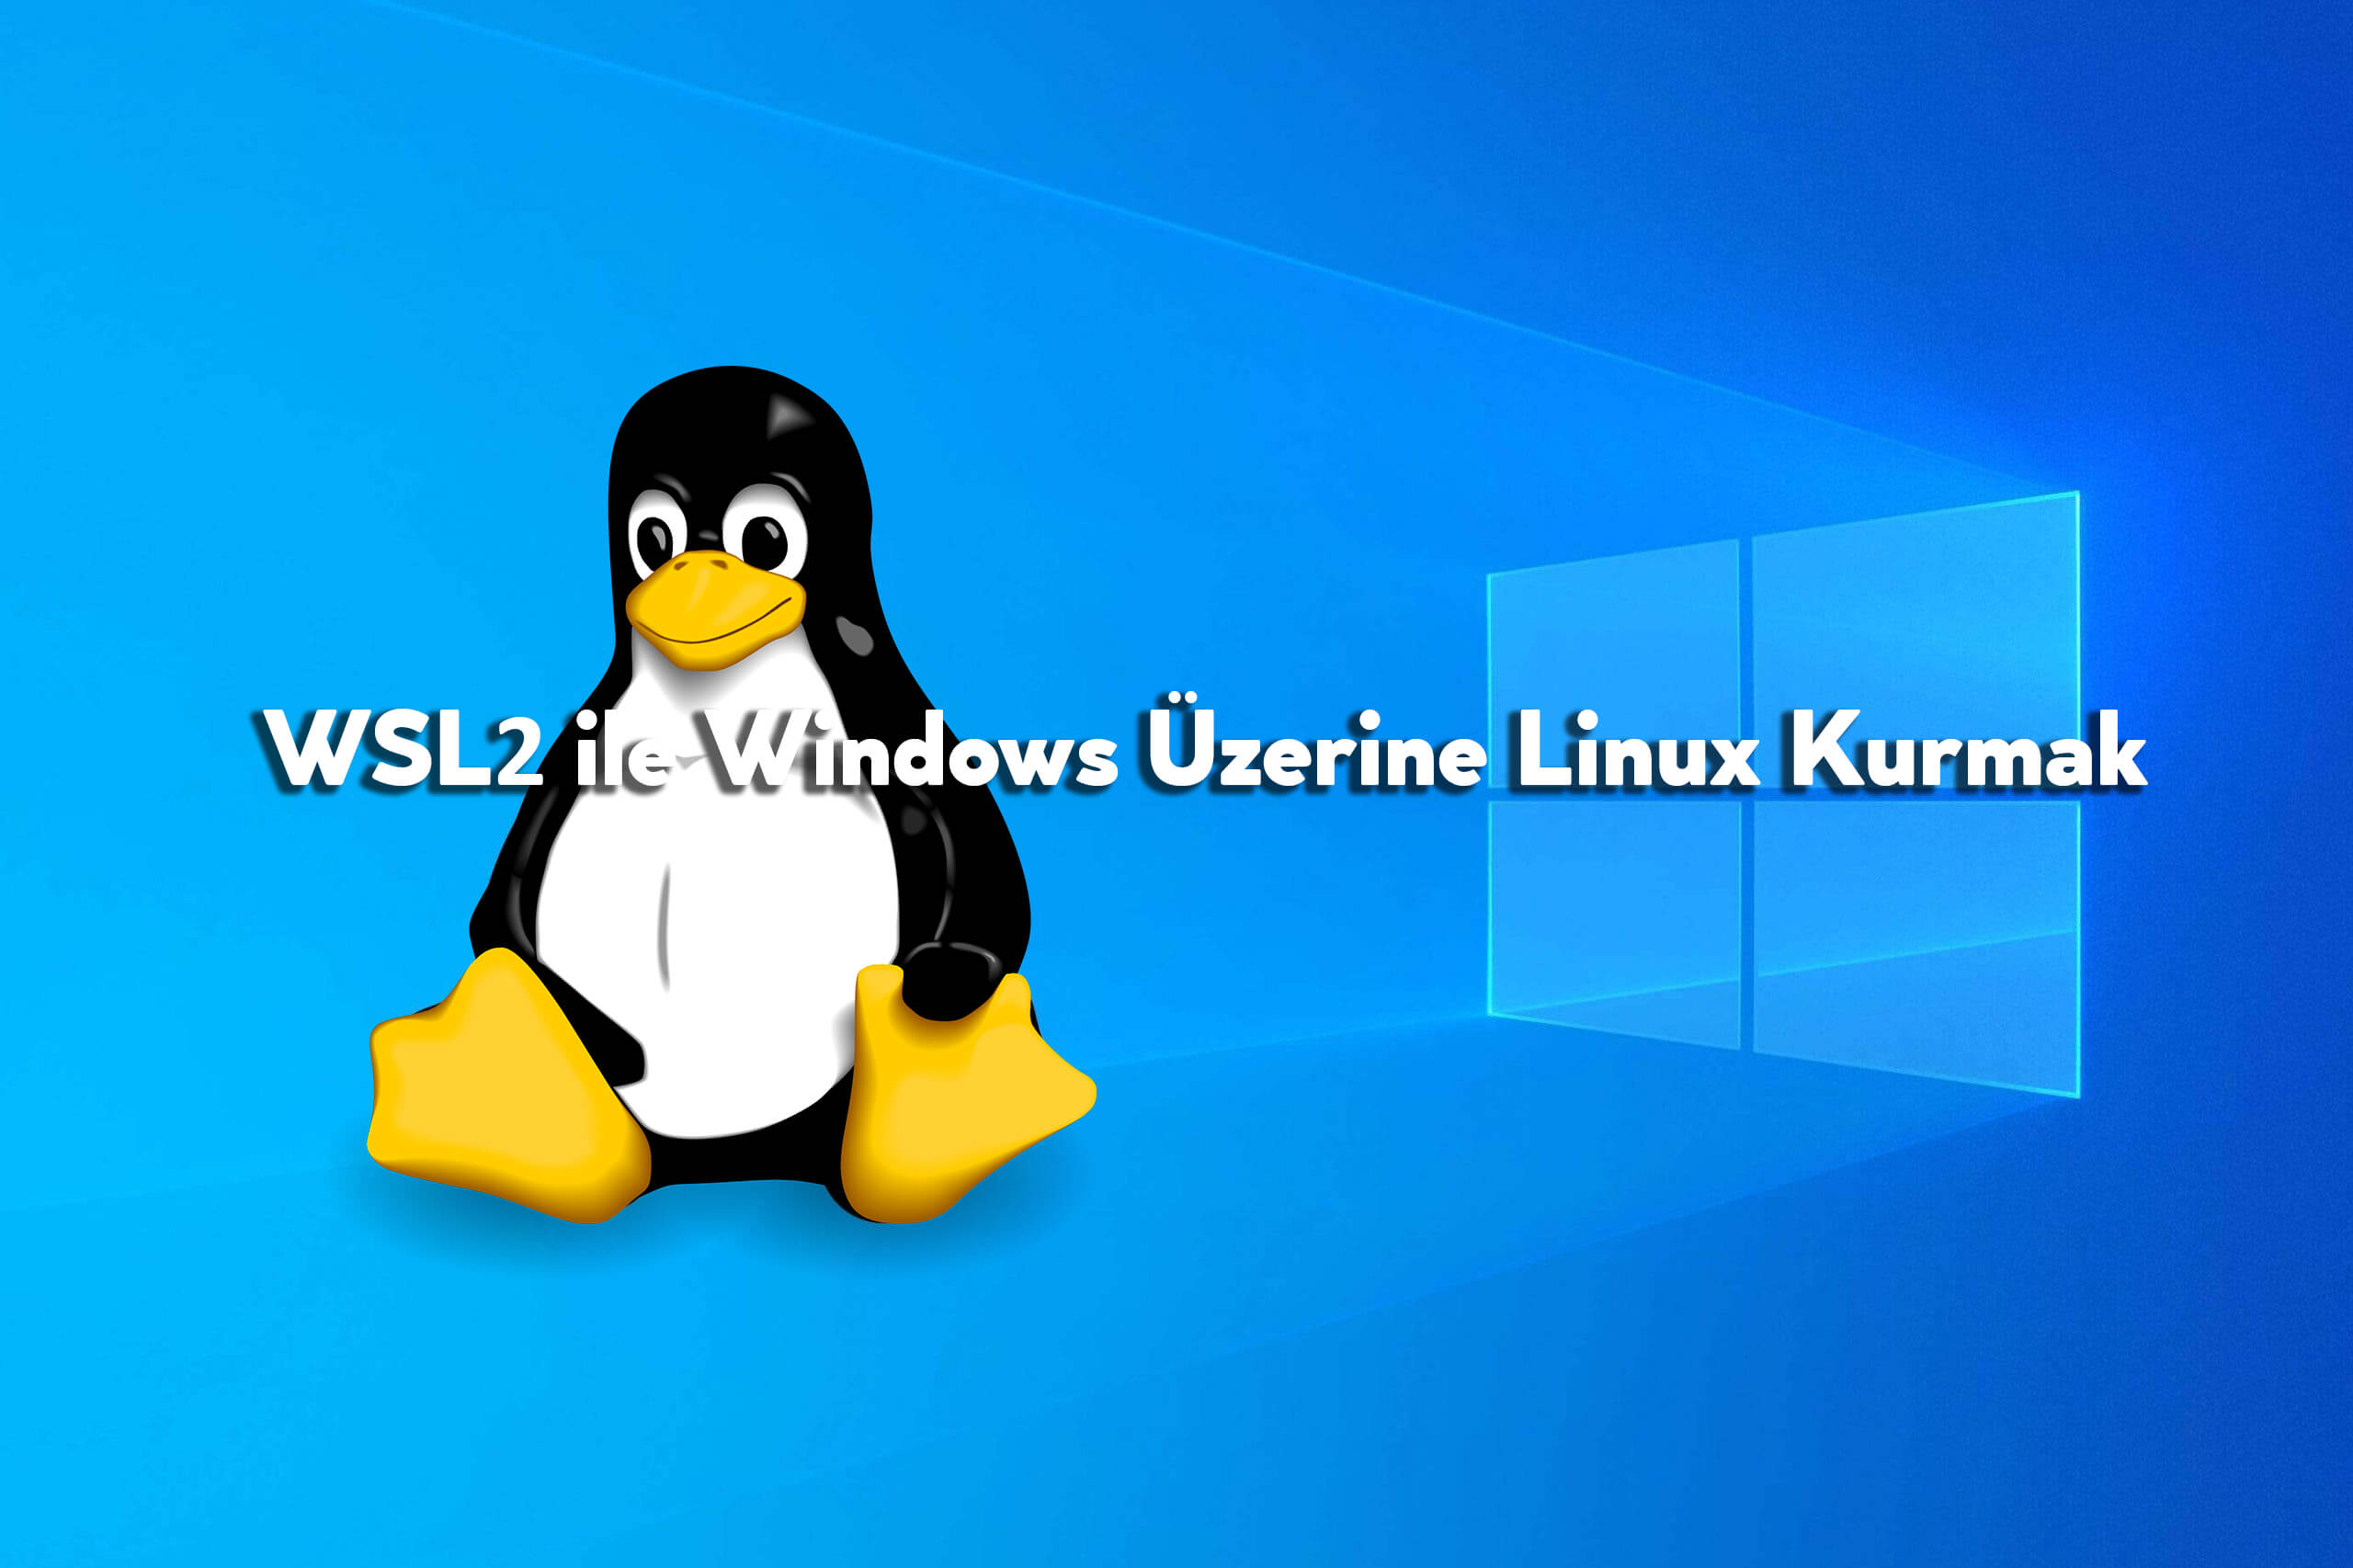 WSL2 ile Windows Üzerine Linux Kurmak